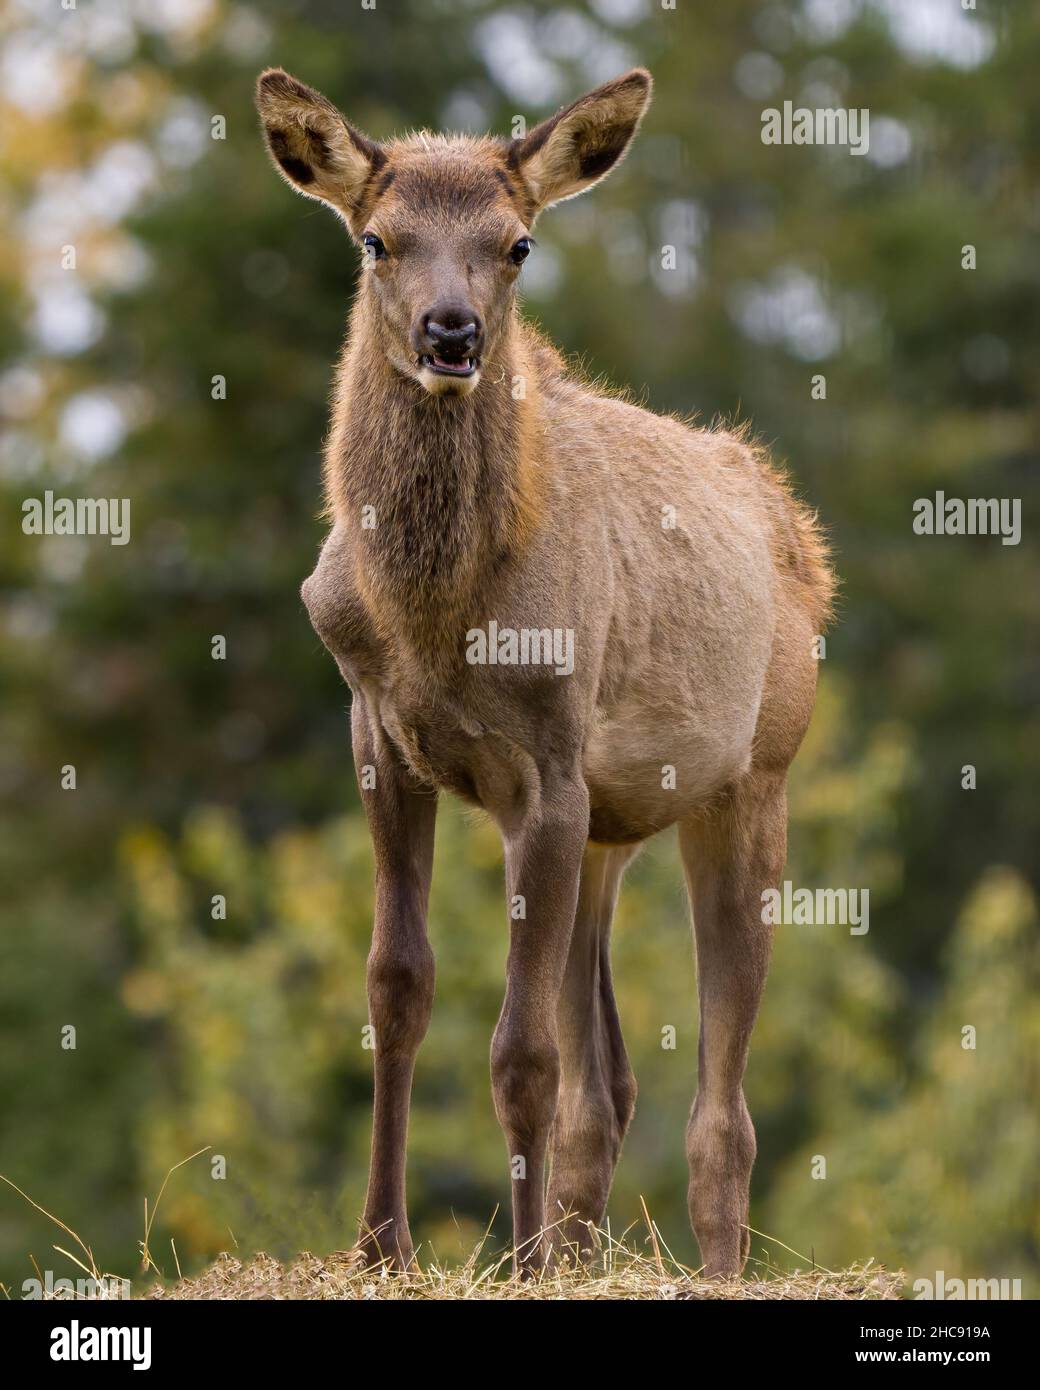 Vista de primer plano de los animales jóvenes de Elk mirando la cámara con un fondo borroso en su entorno y hábitat circundante. Foto de stock